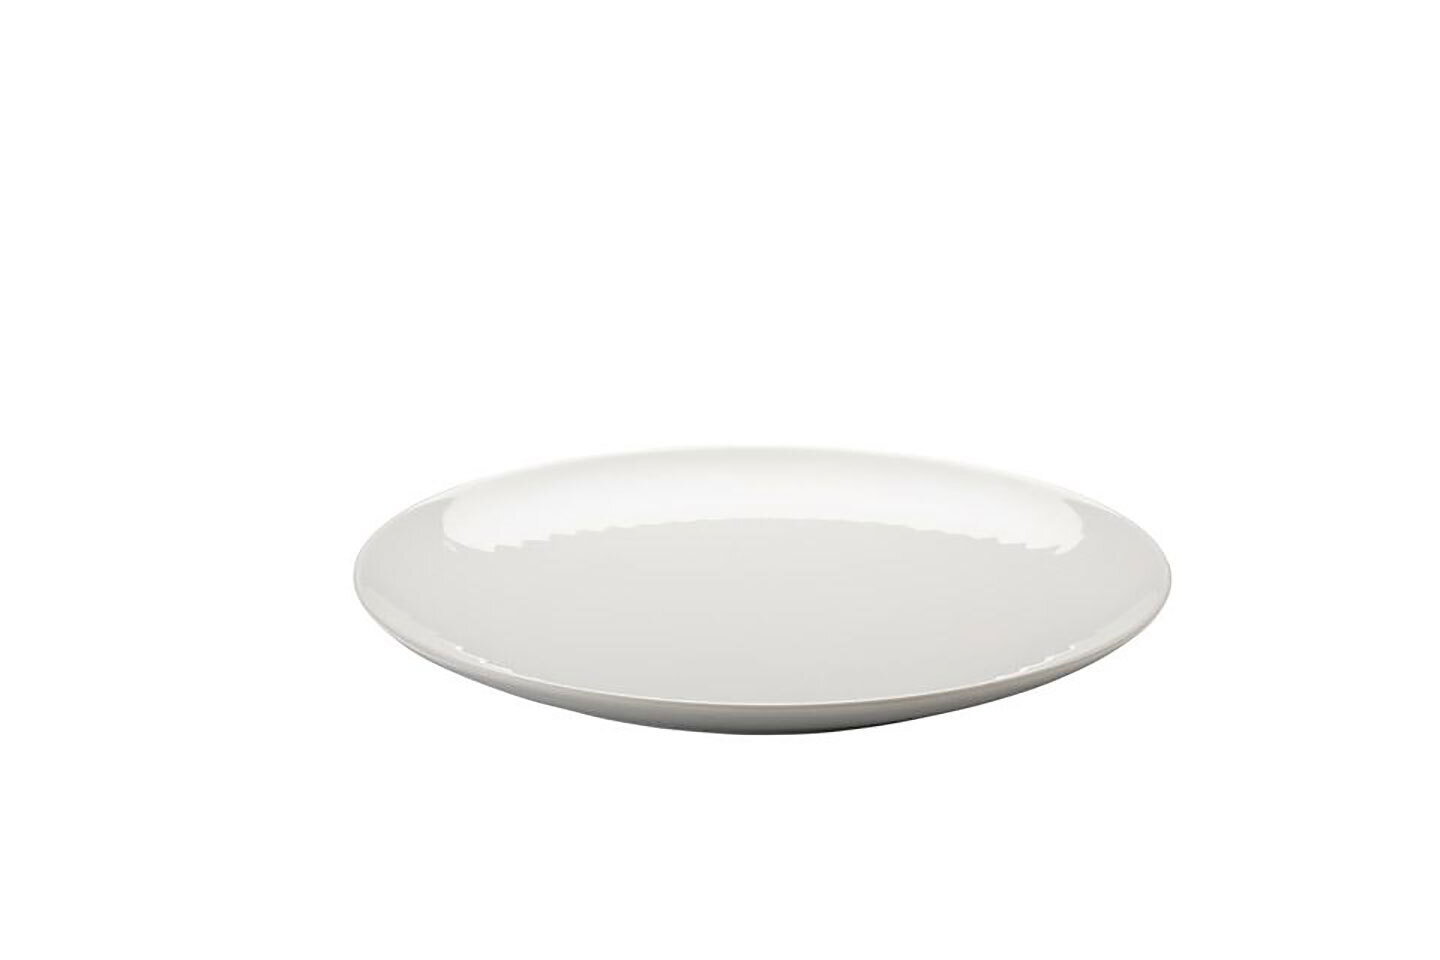 Arzberg Joyn White Dinner Plate 10 1/2 in